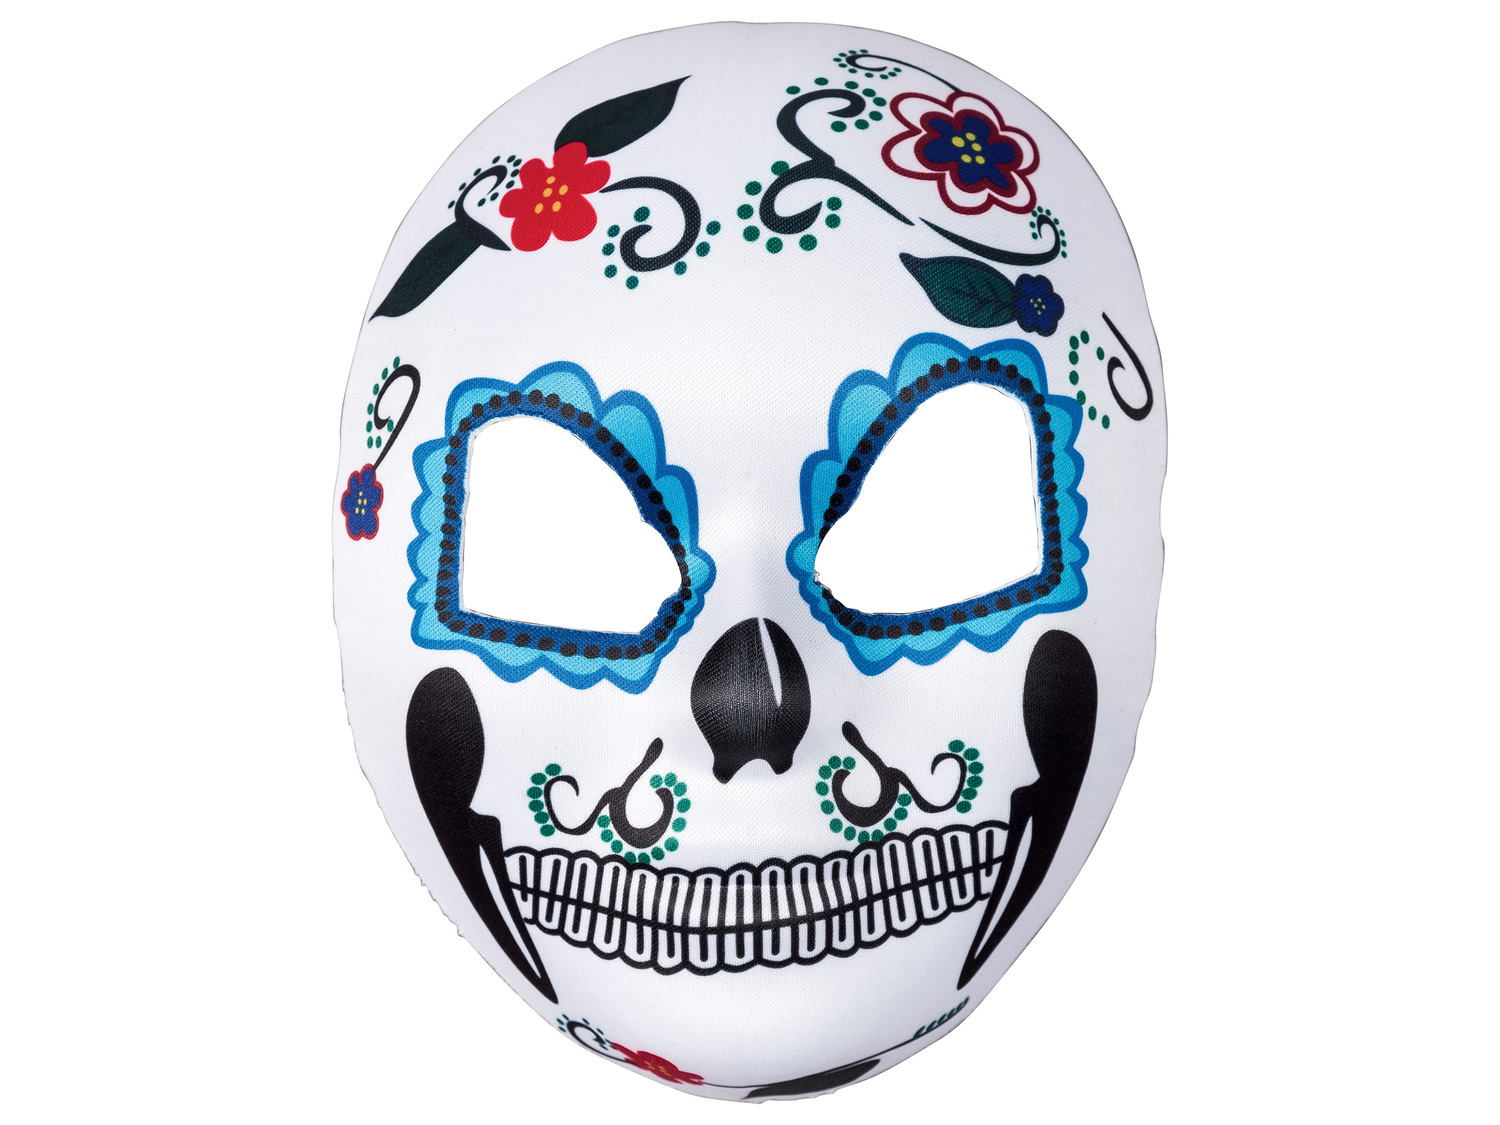 Masque d’Halloween , le prix 2.49 € 
- Taille unique.
- Ex. Plastique
- 4 ...